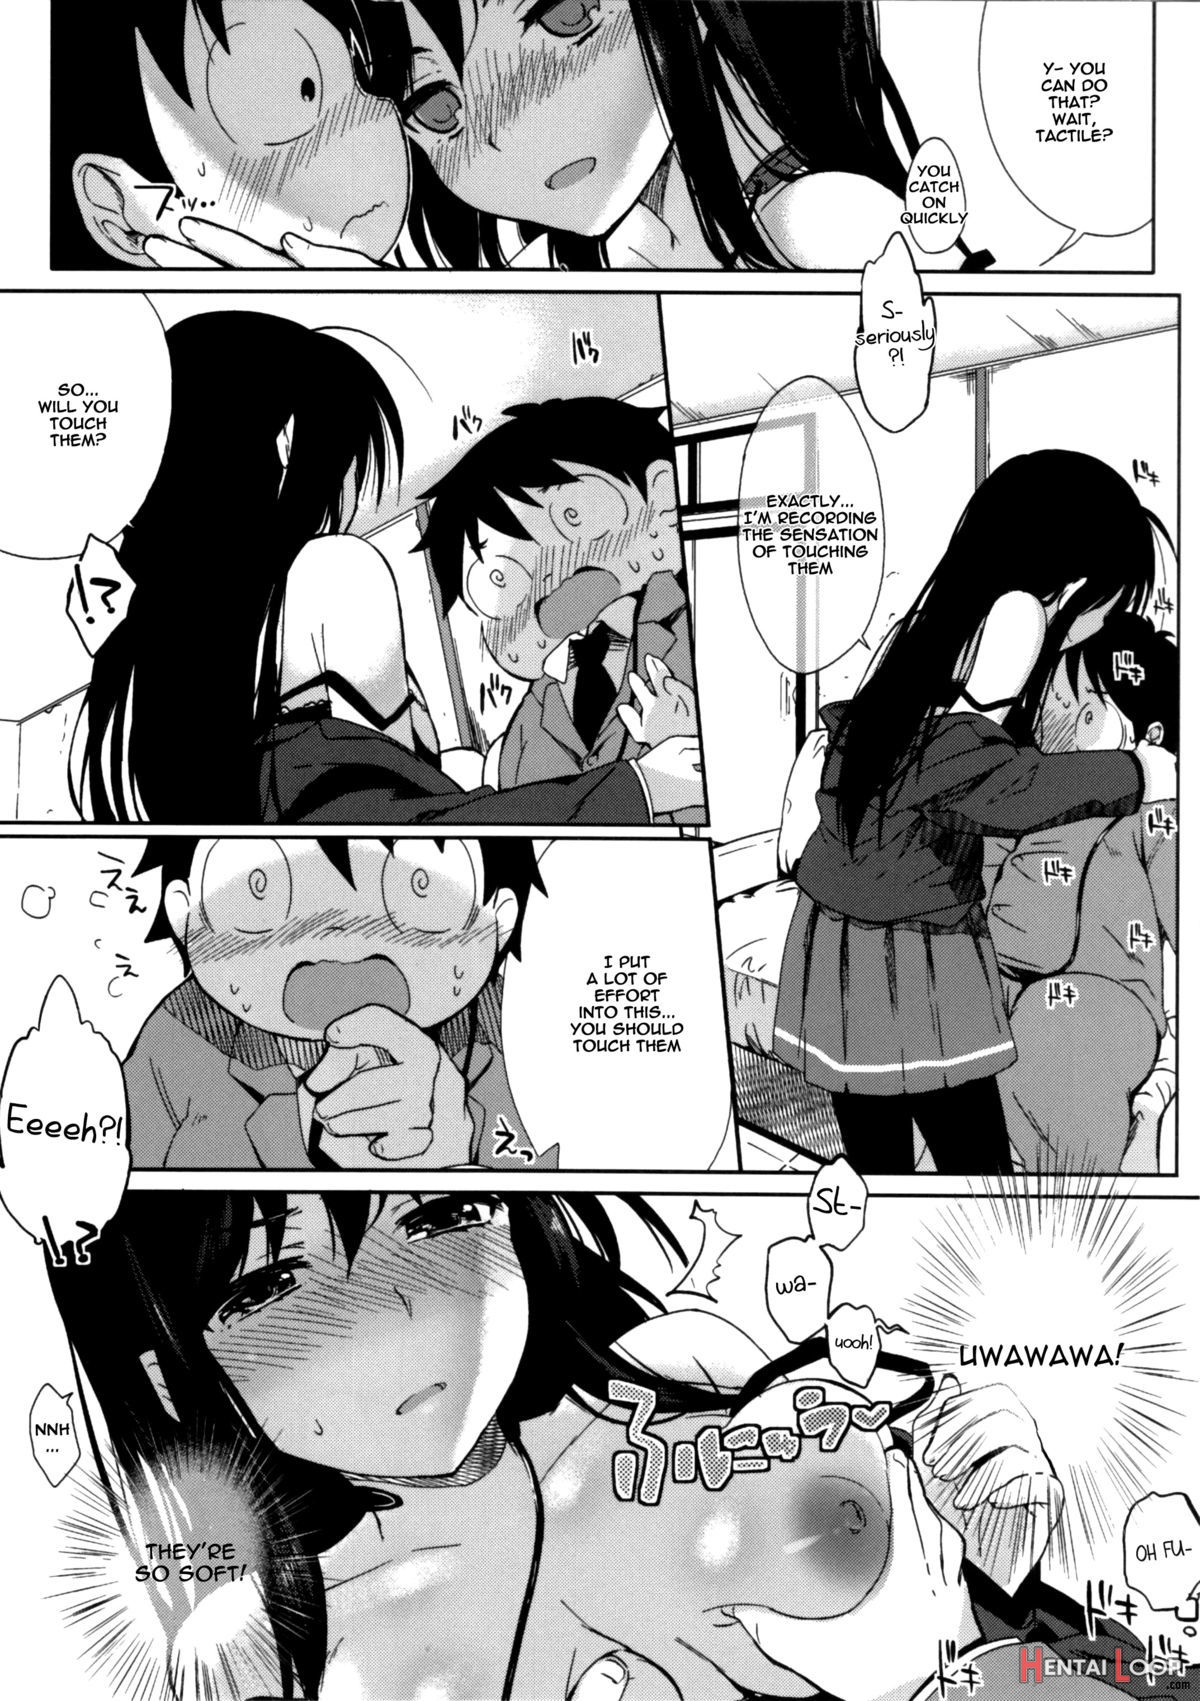 Chokketsu â™¥ Accelerating page 9